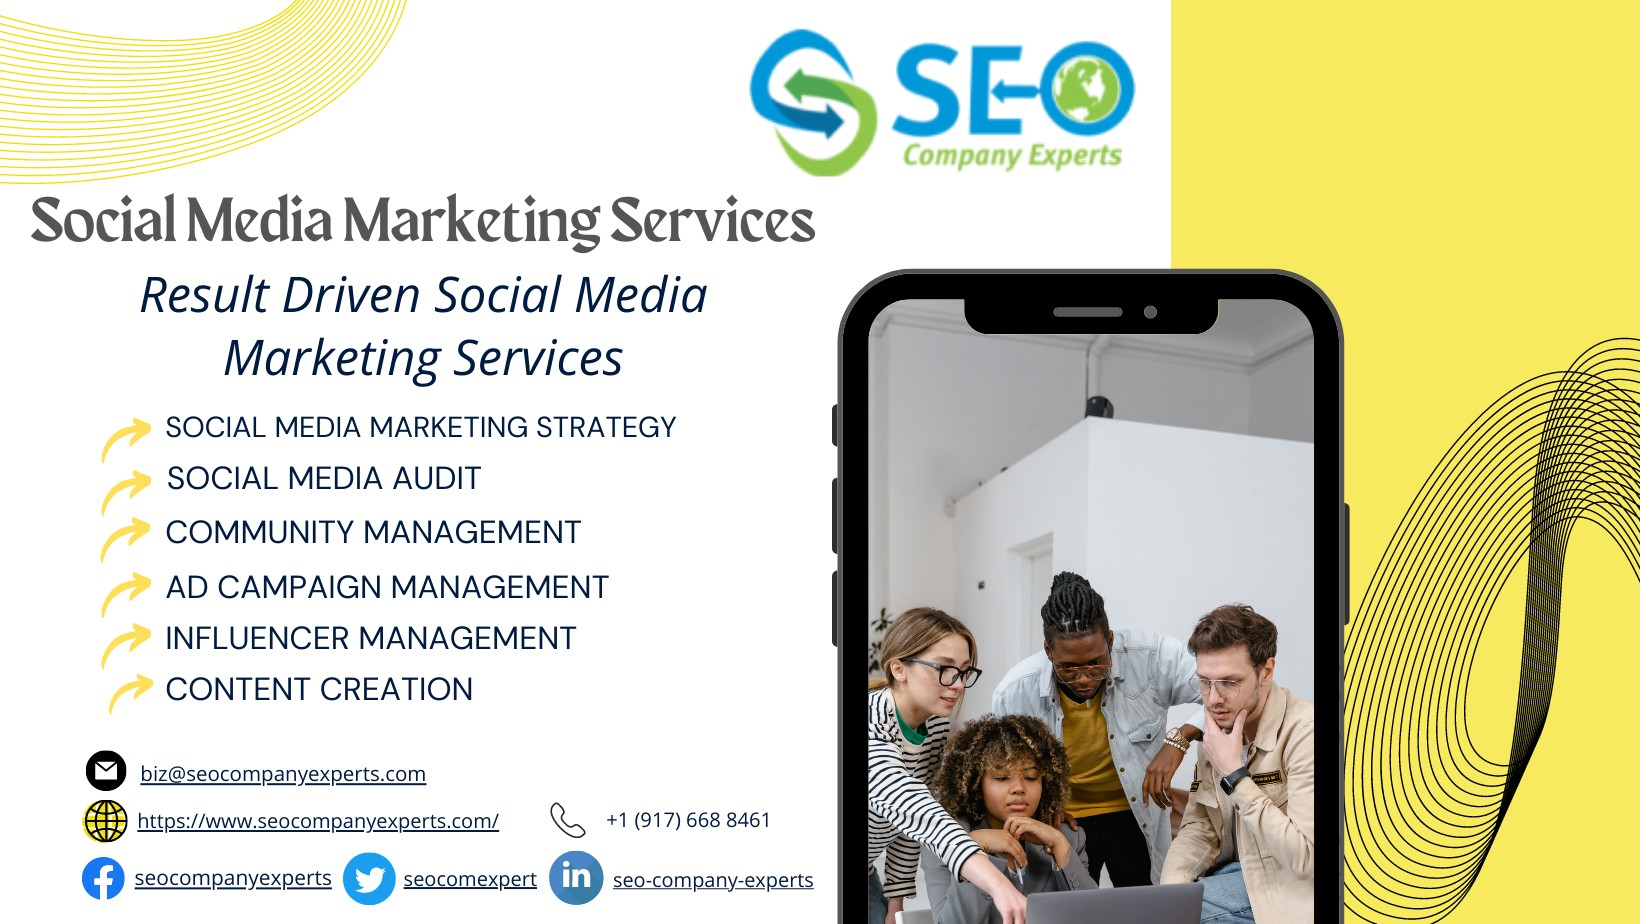 Social Media Marketing Agency - Best Social Media Marketing Services